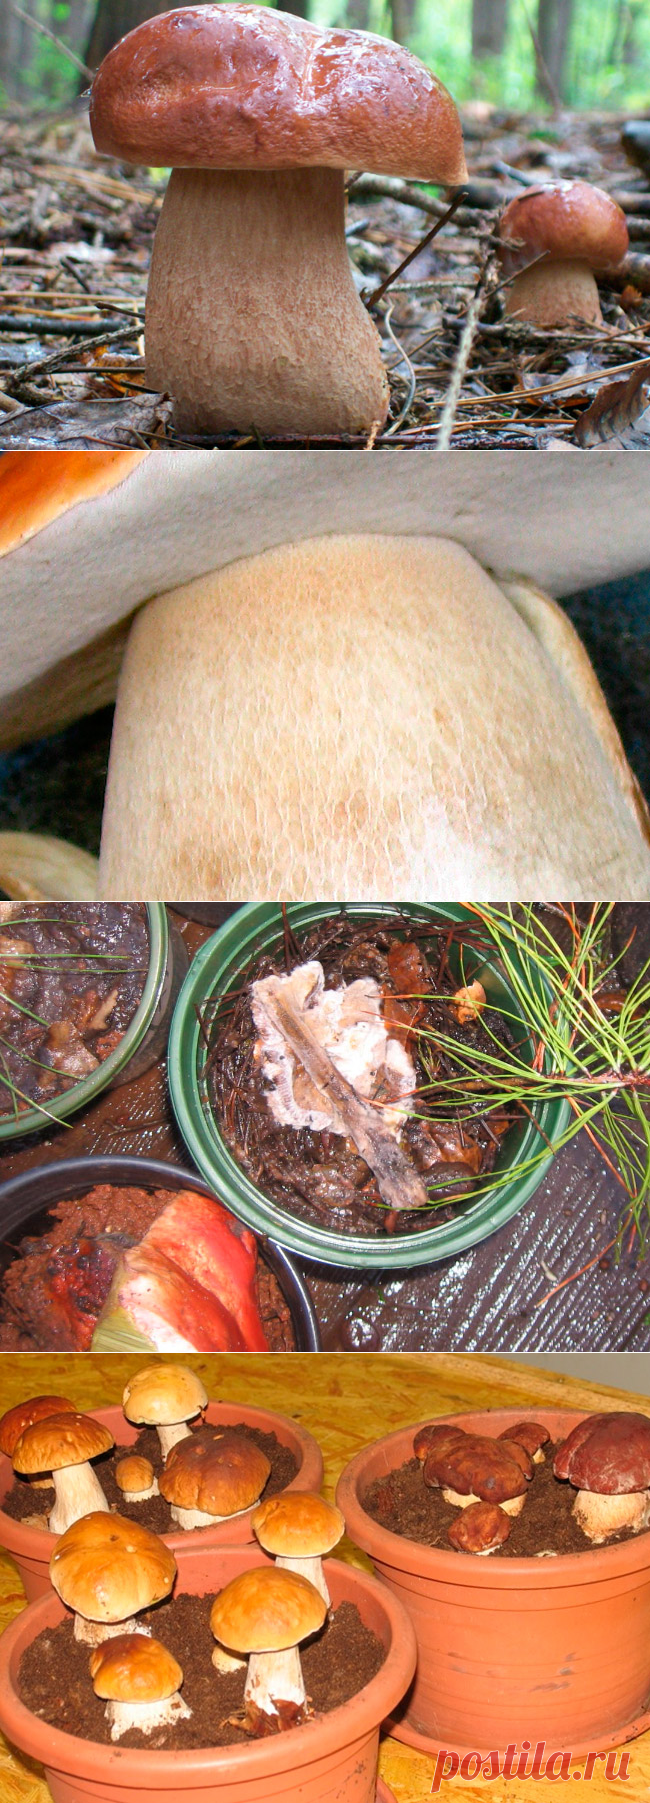 Выращивание белых грибов в подвале, теплице или других искусственных условиях — AgroFlora.ru